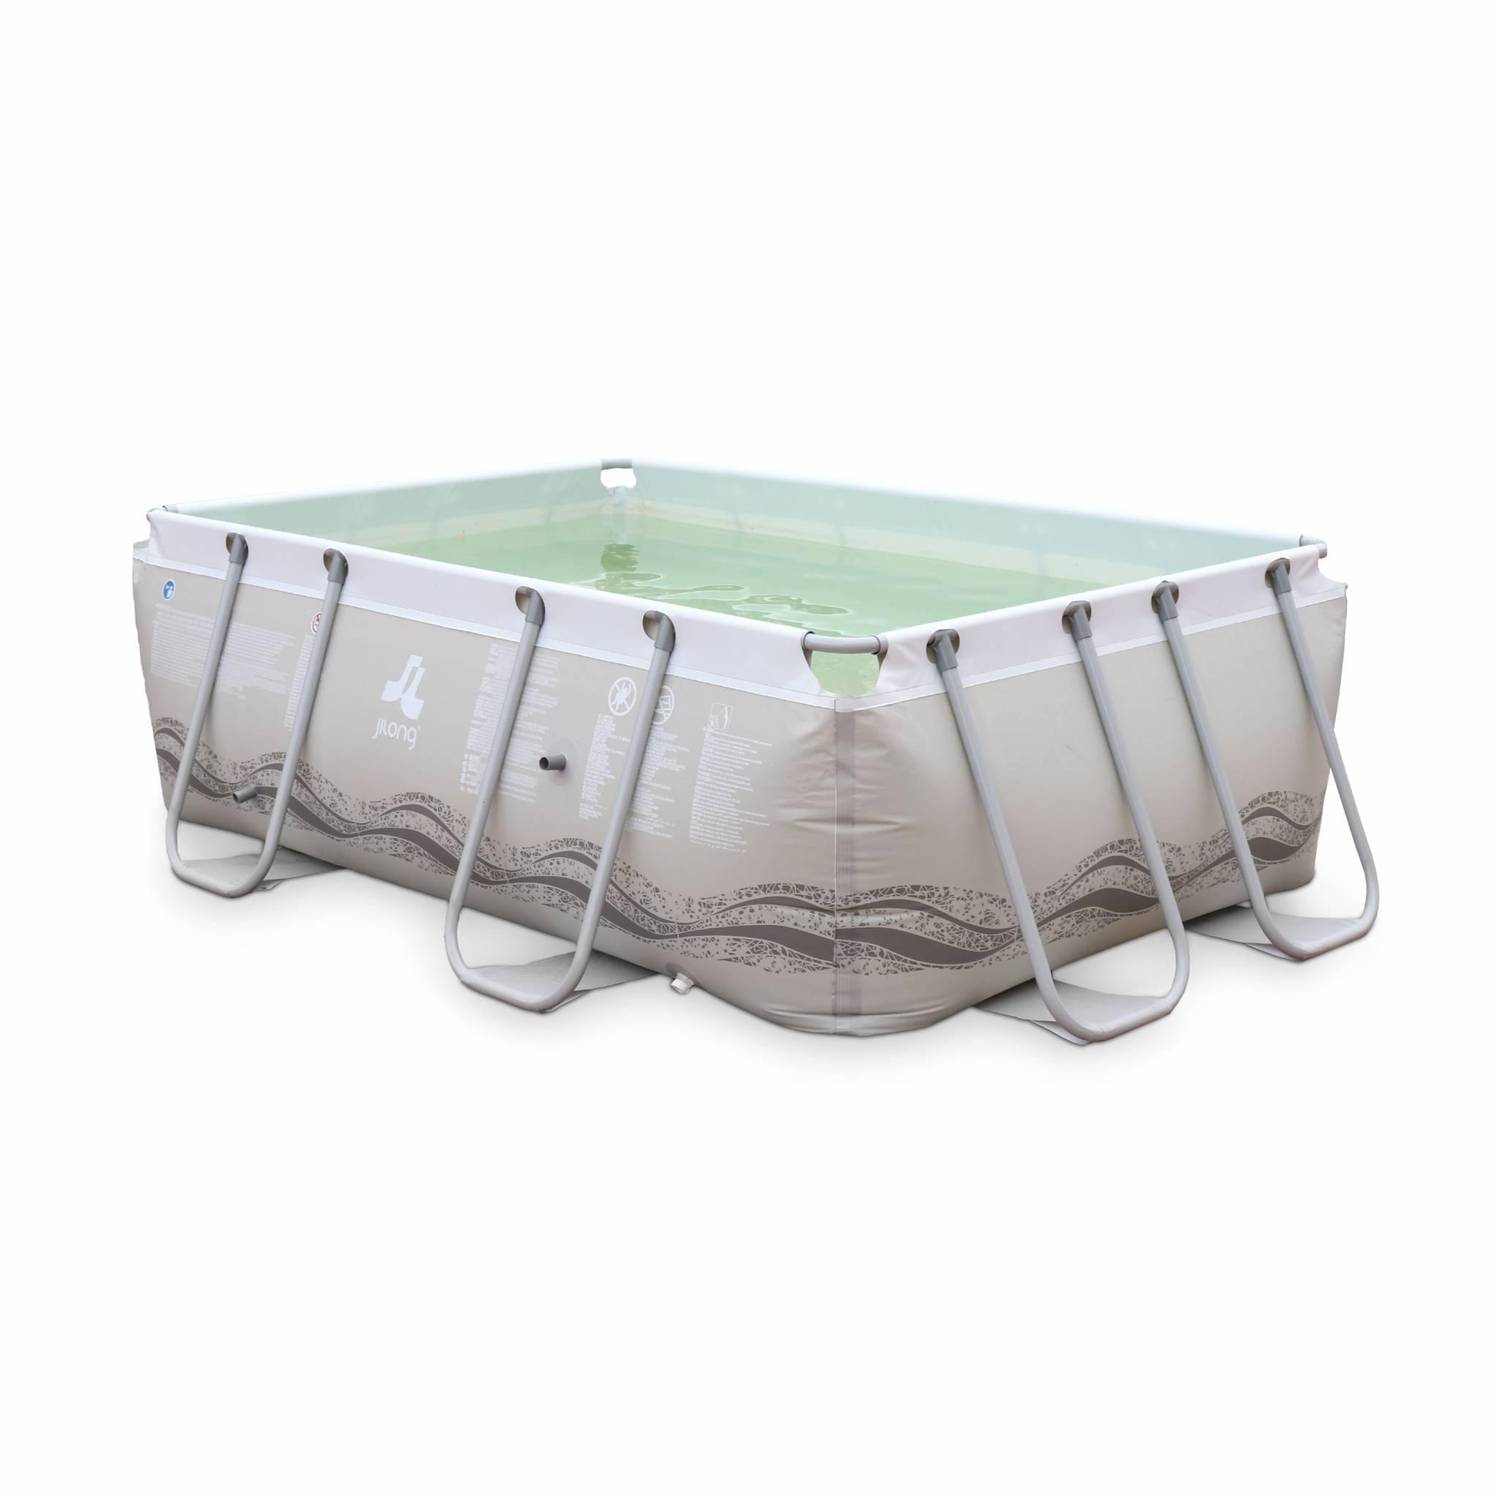 Piscine Tubulaire Corail grise, piscine rectangulaire 3x2m avec pompe de filtration, piscine hors sol armature acier Photo2